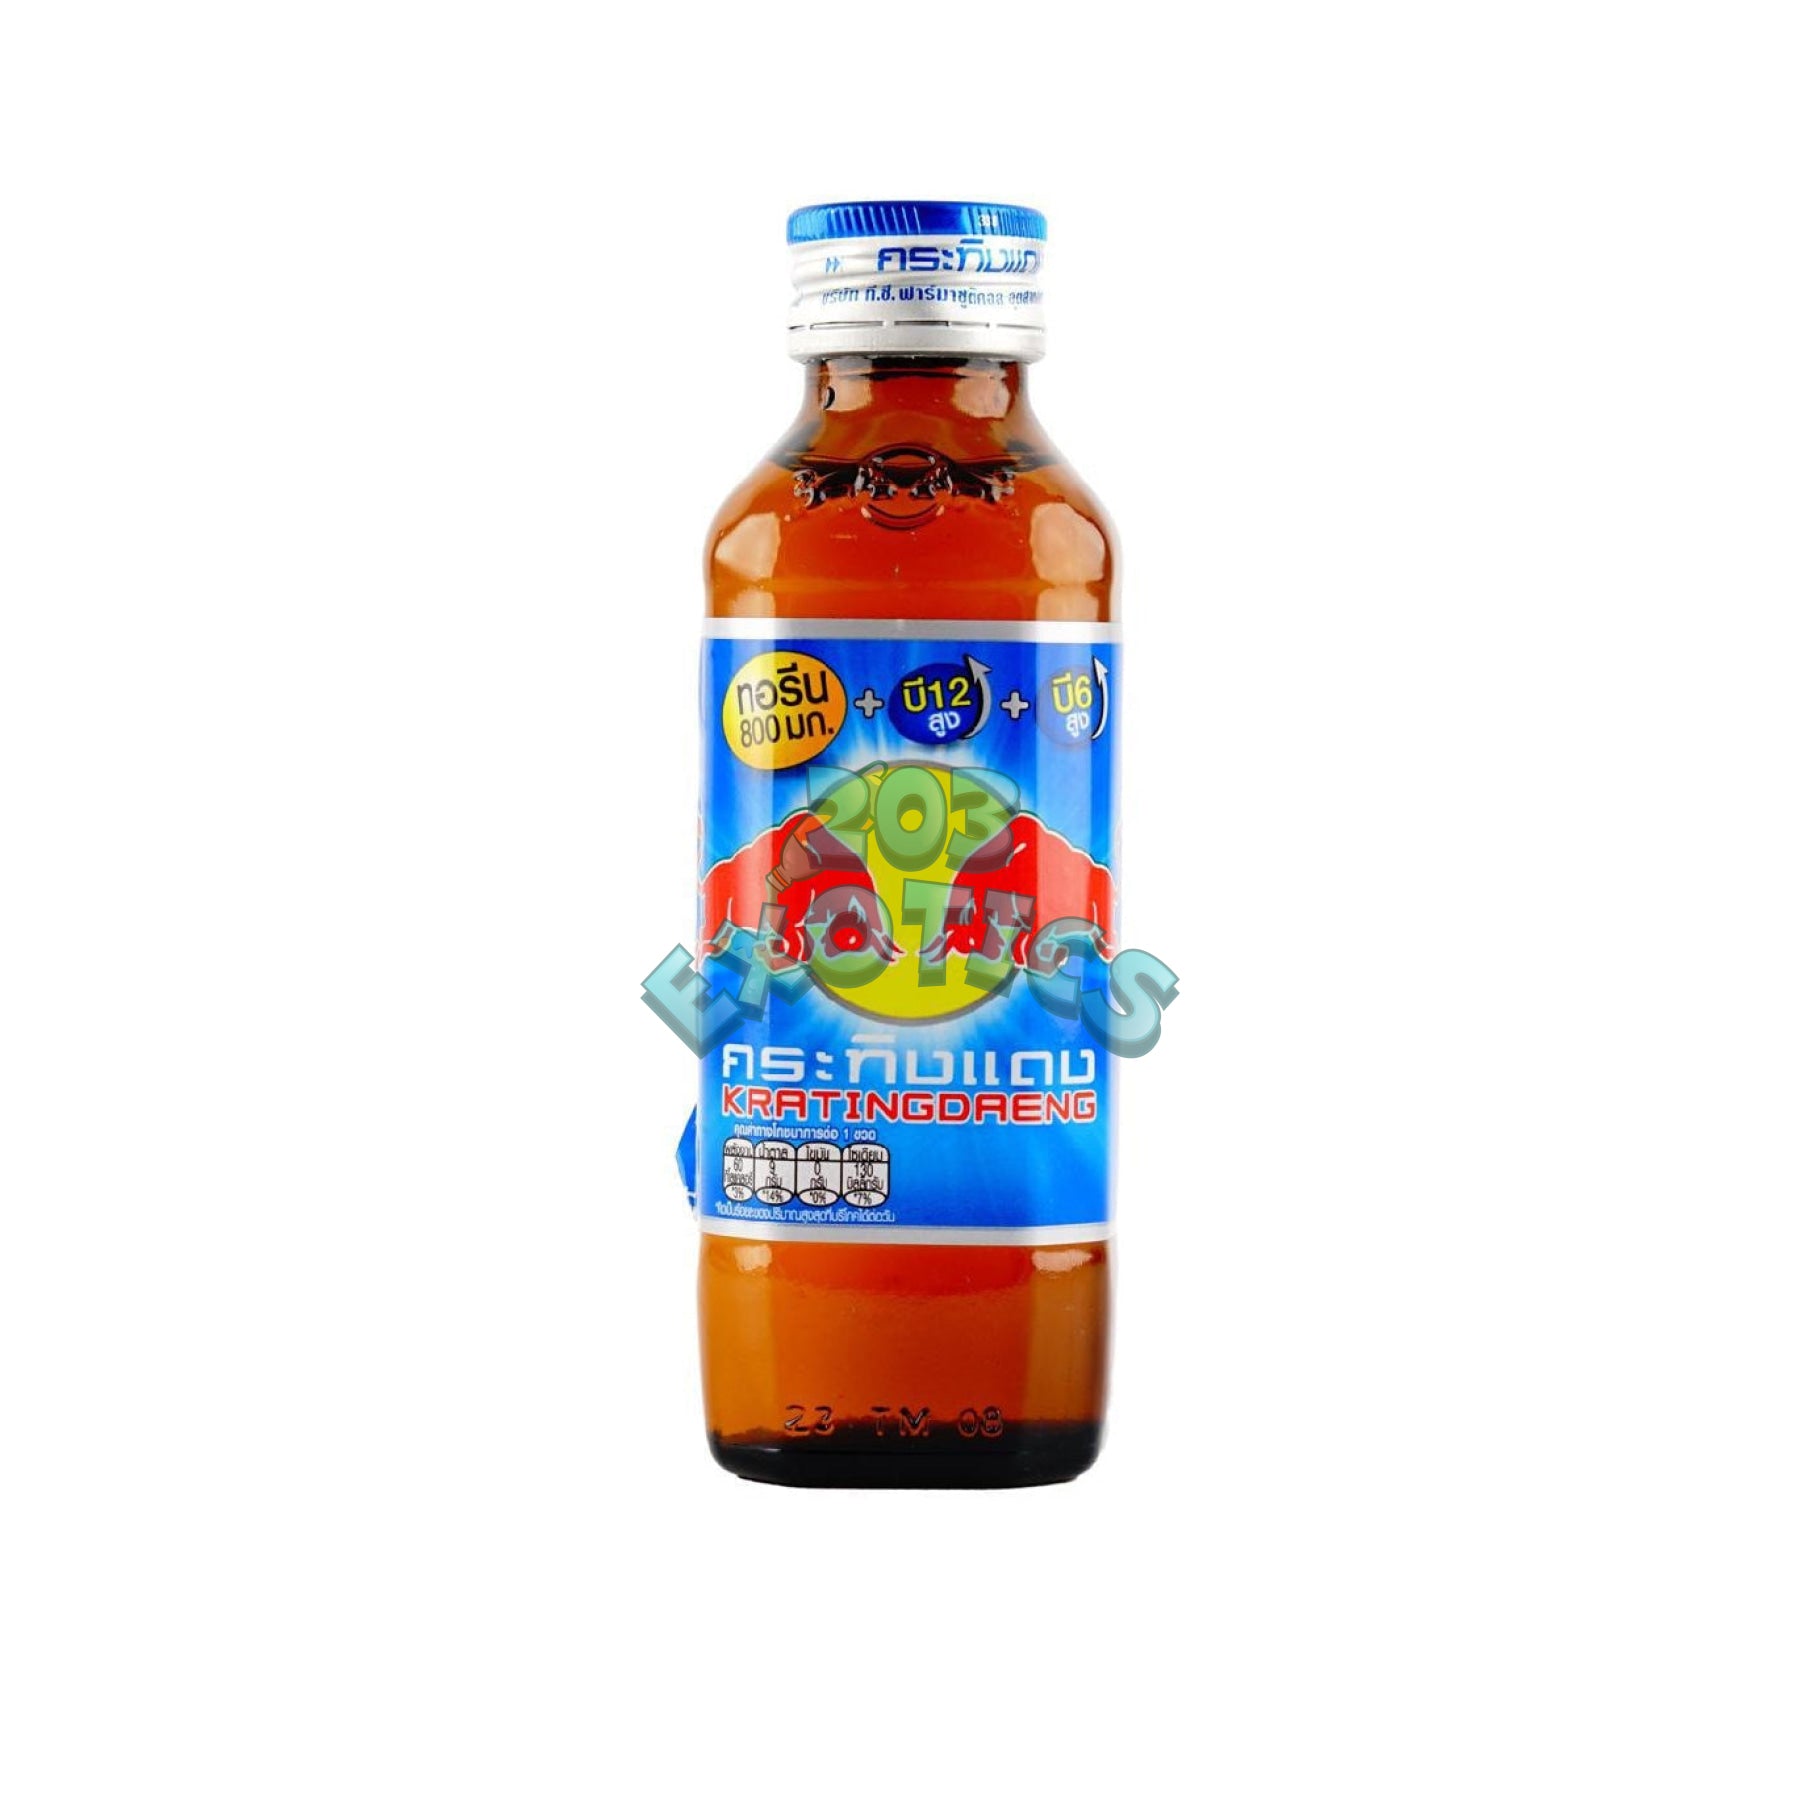 Red Bull Glass Bottle (Thailand)(150Ml) Energy Drink